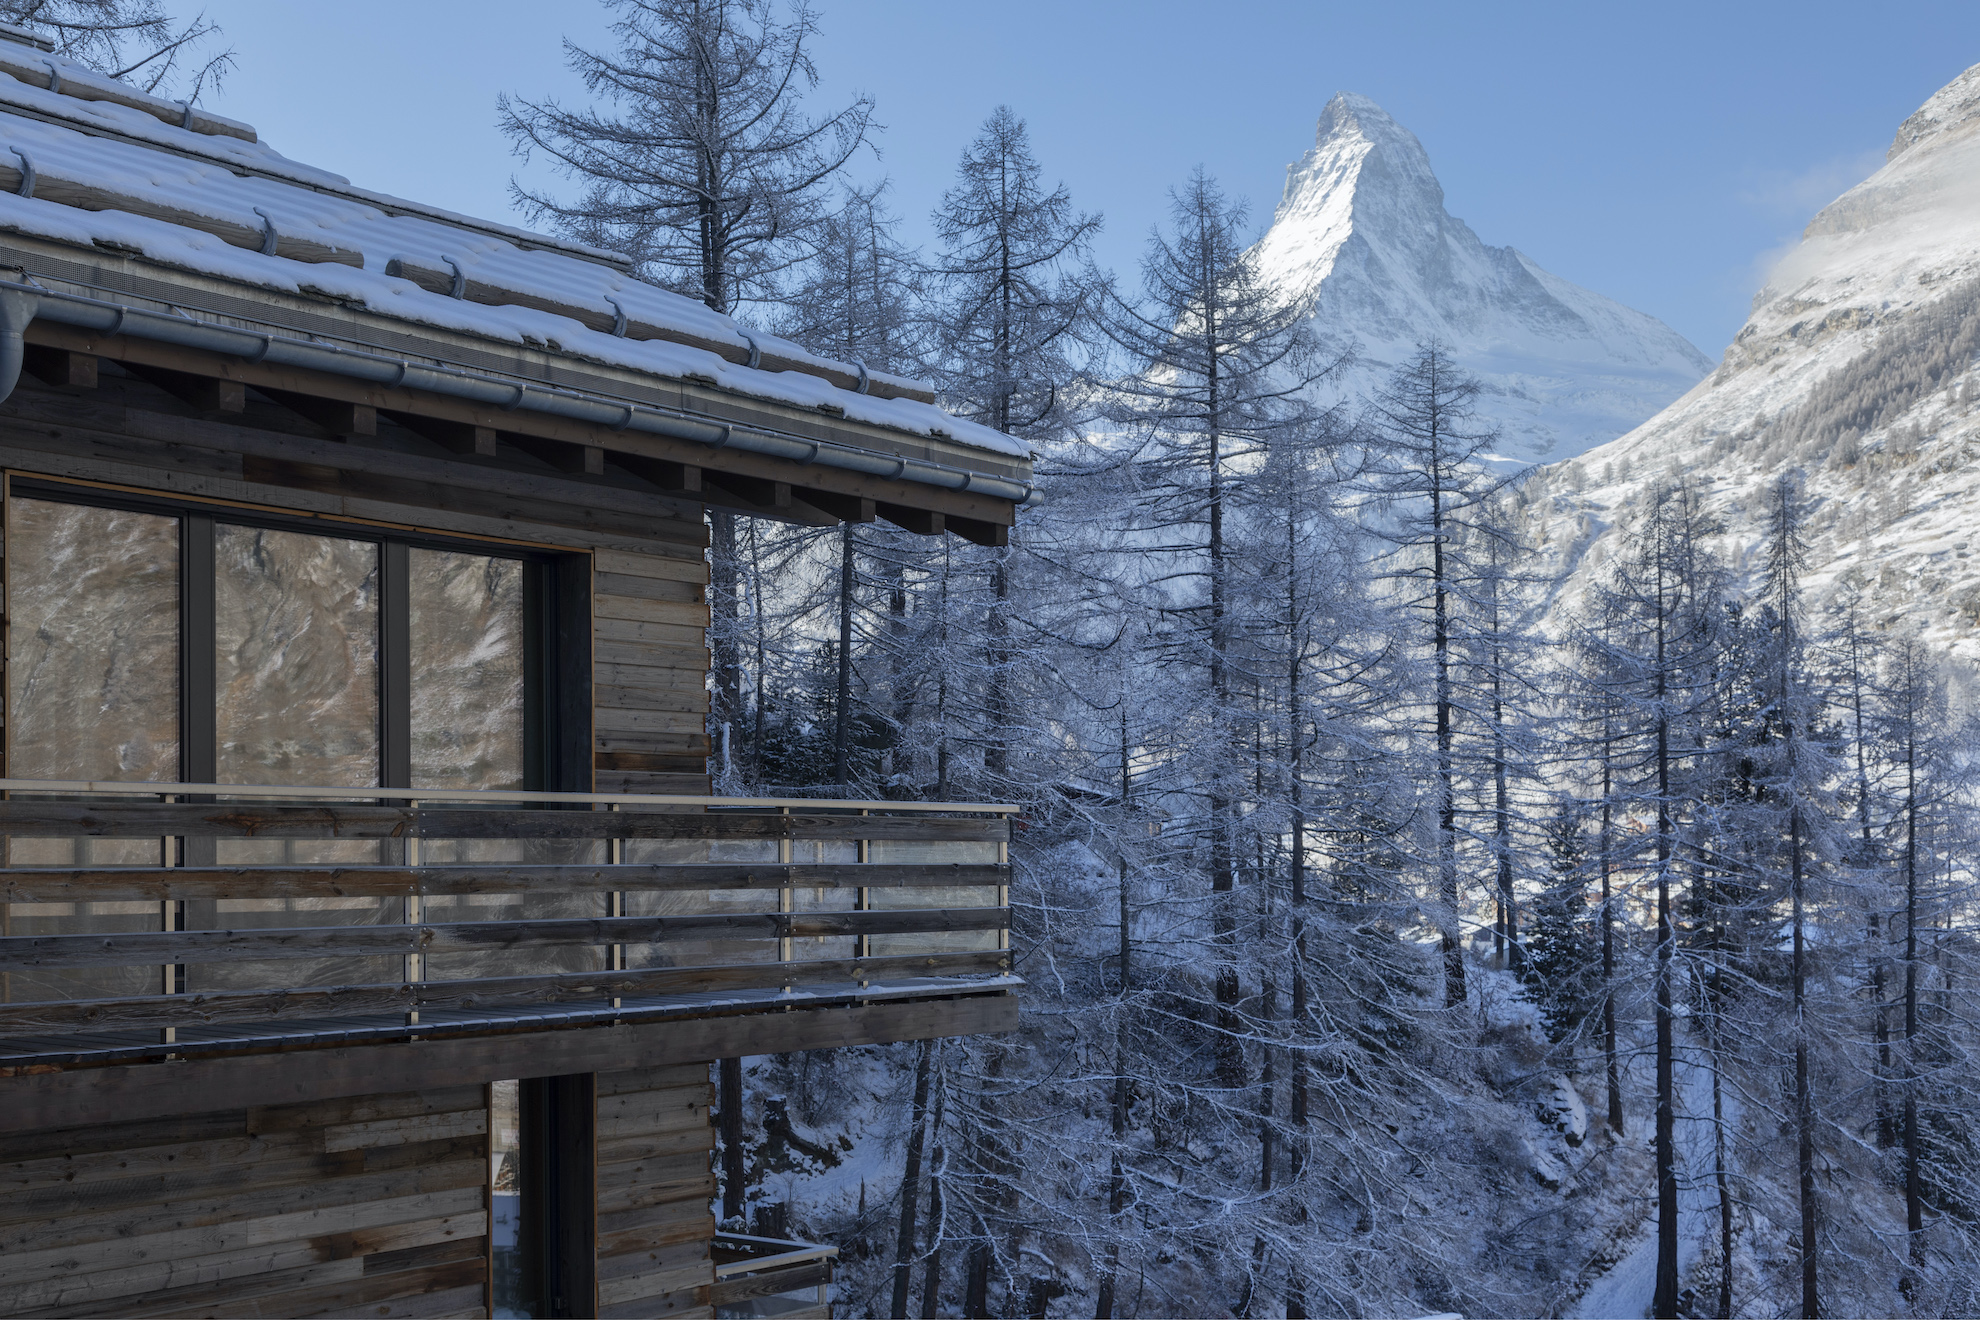 Lodge with Matterhorn